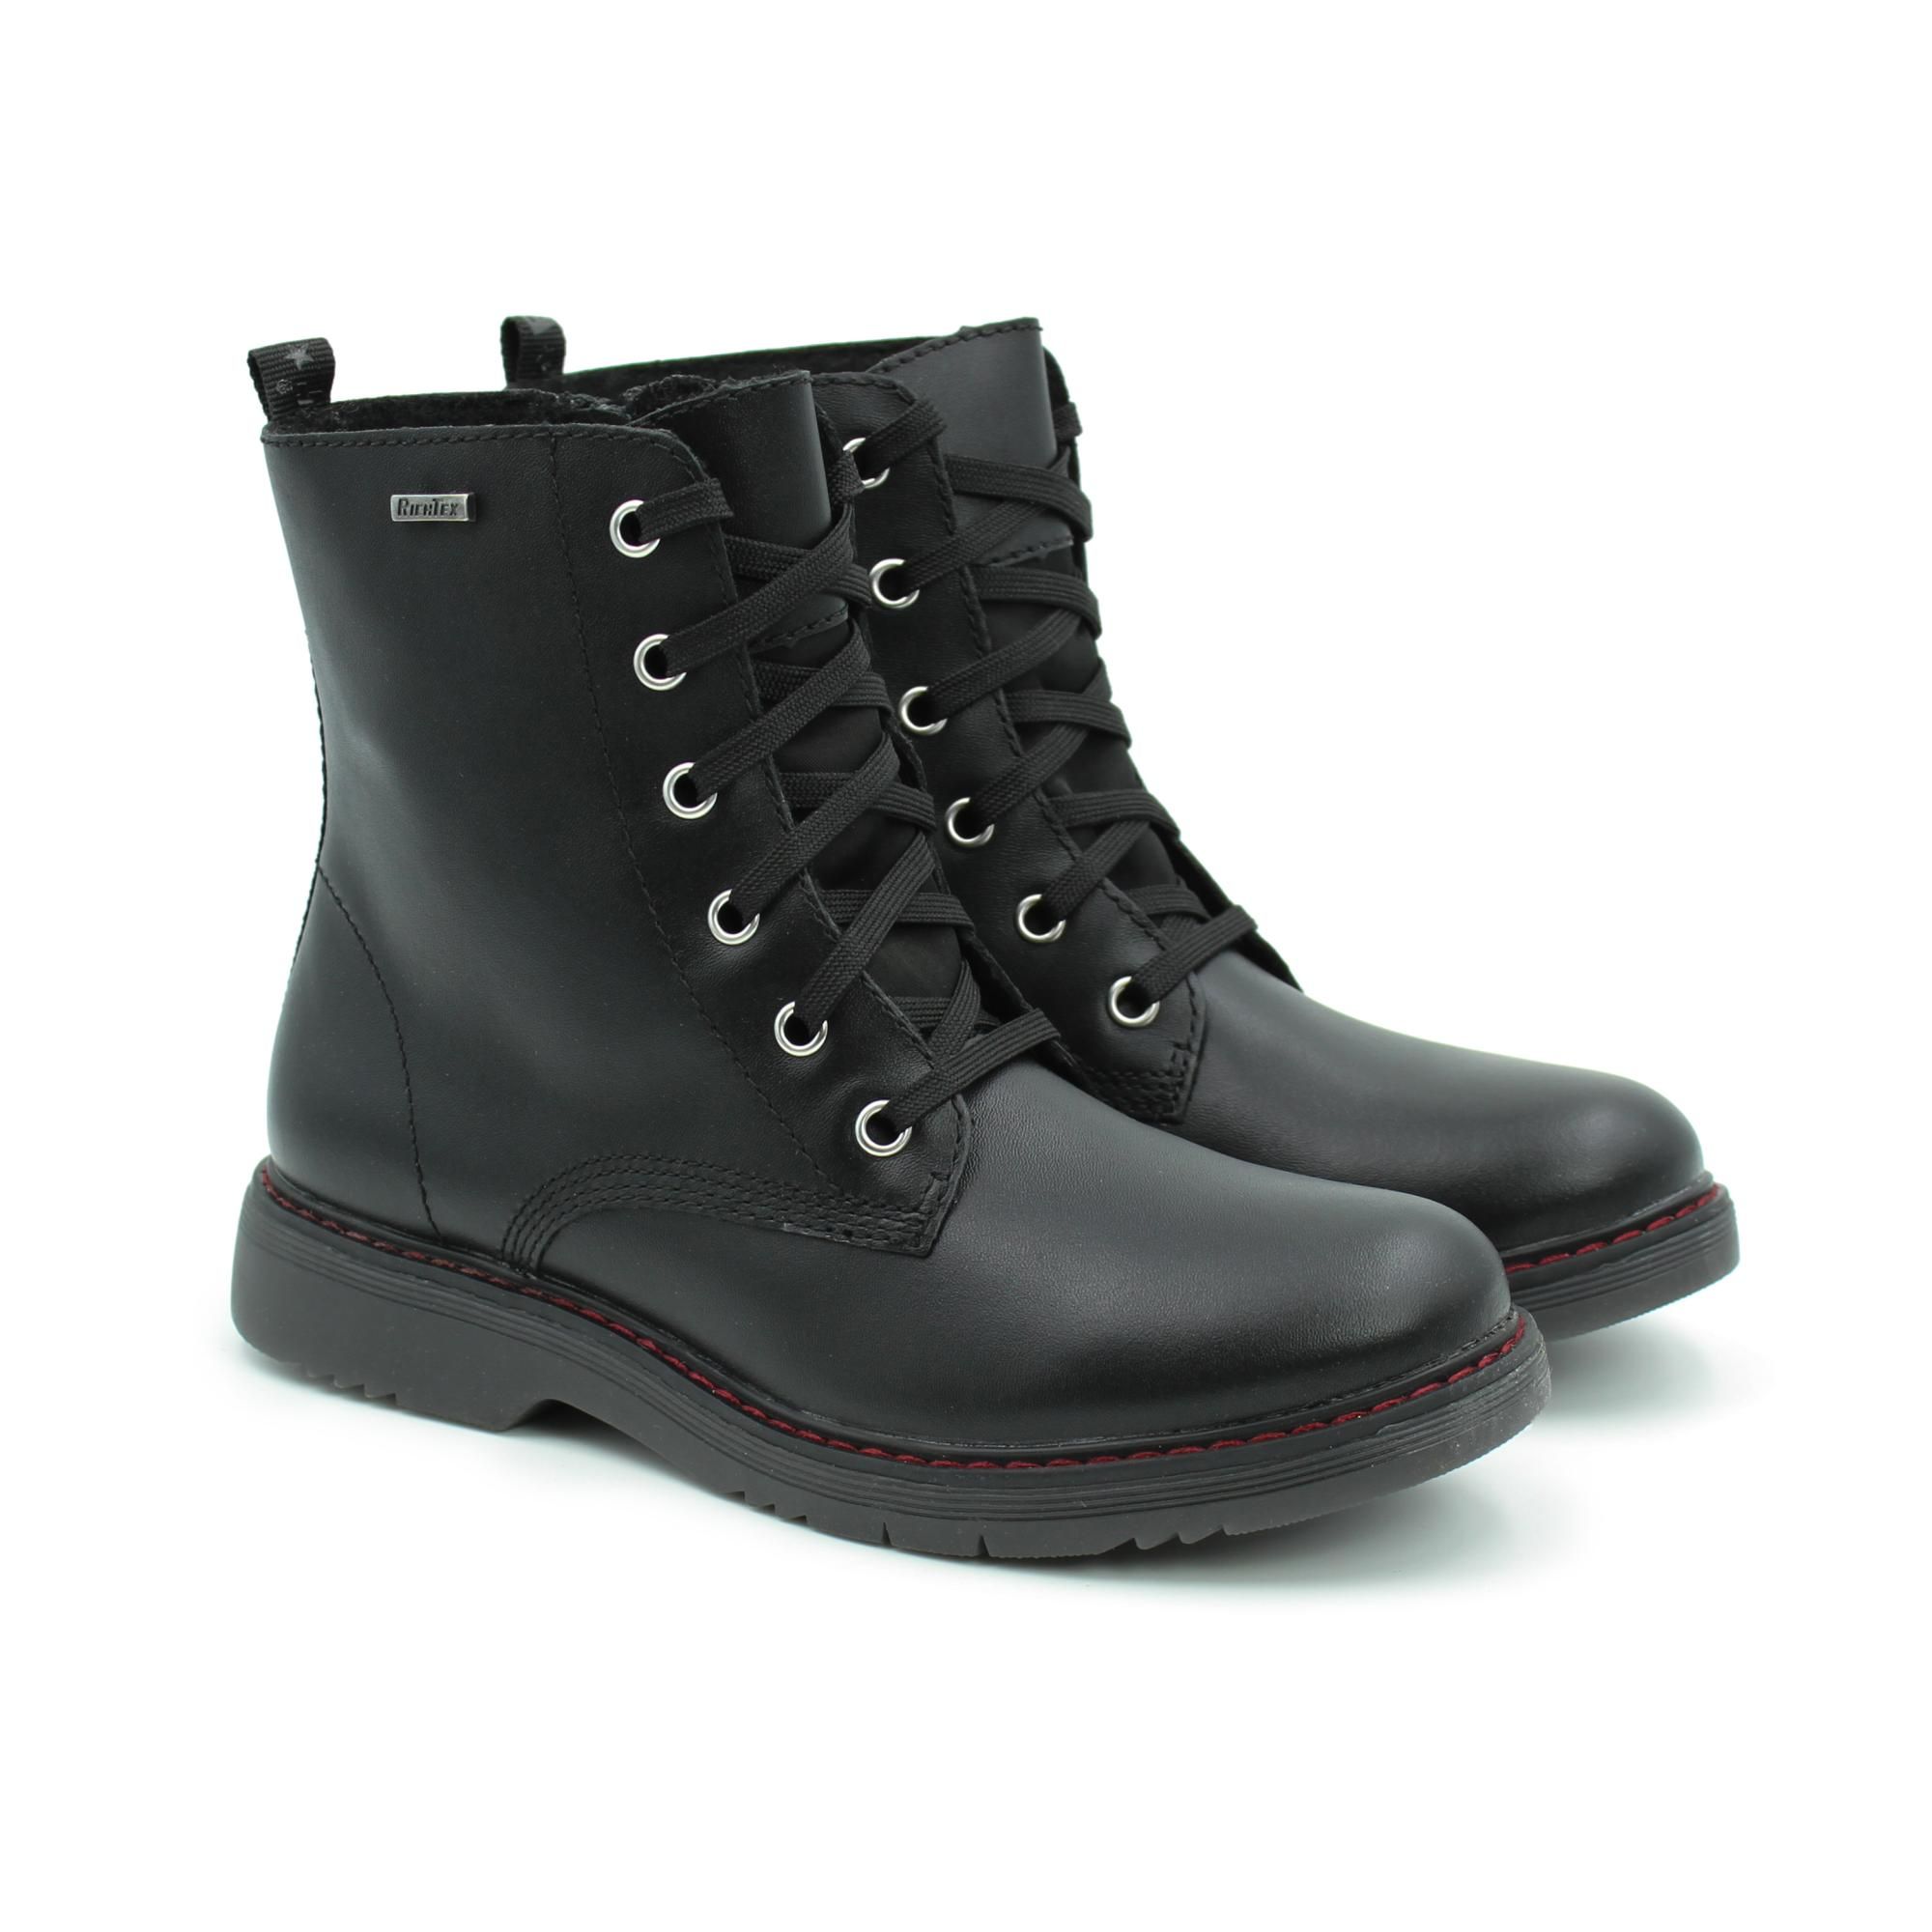 Ботинки Richter Prisma boot 4600-2131-9900 цв. черный р. 38